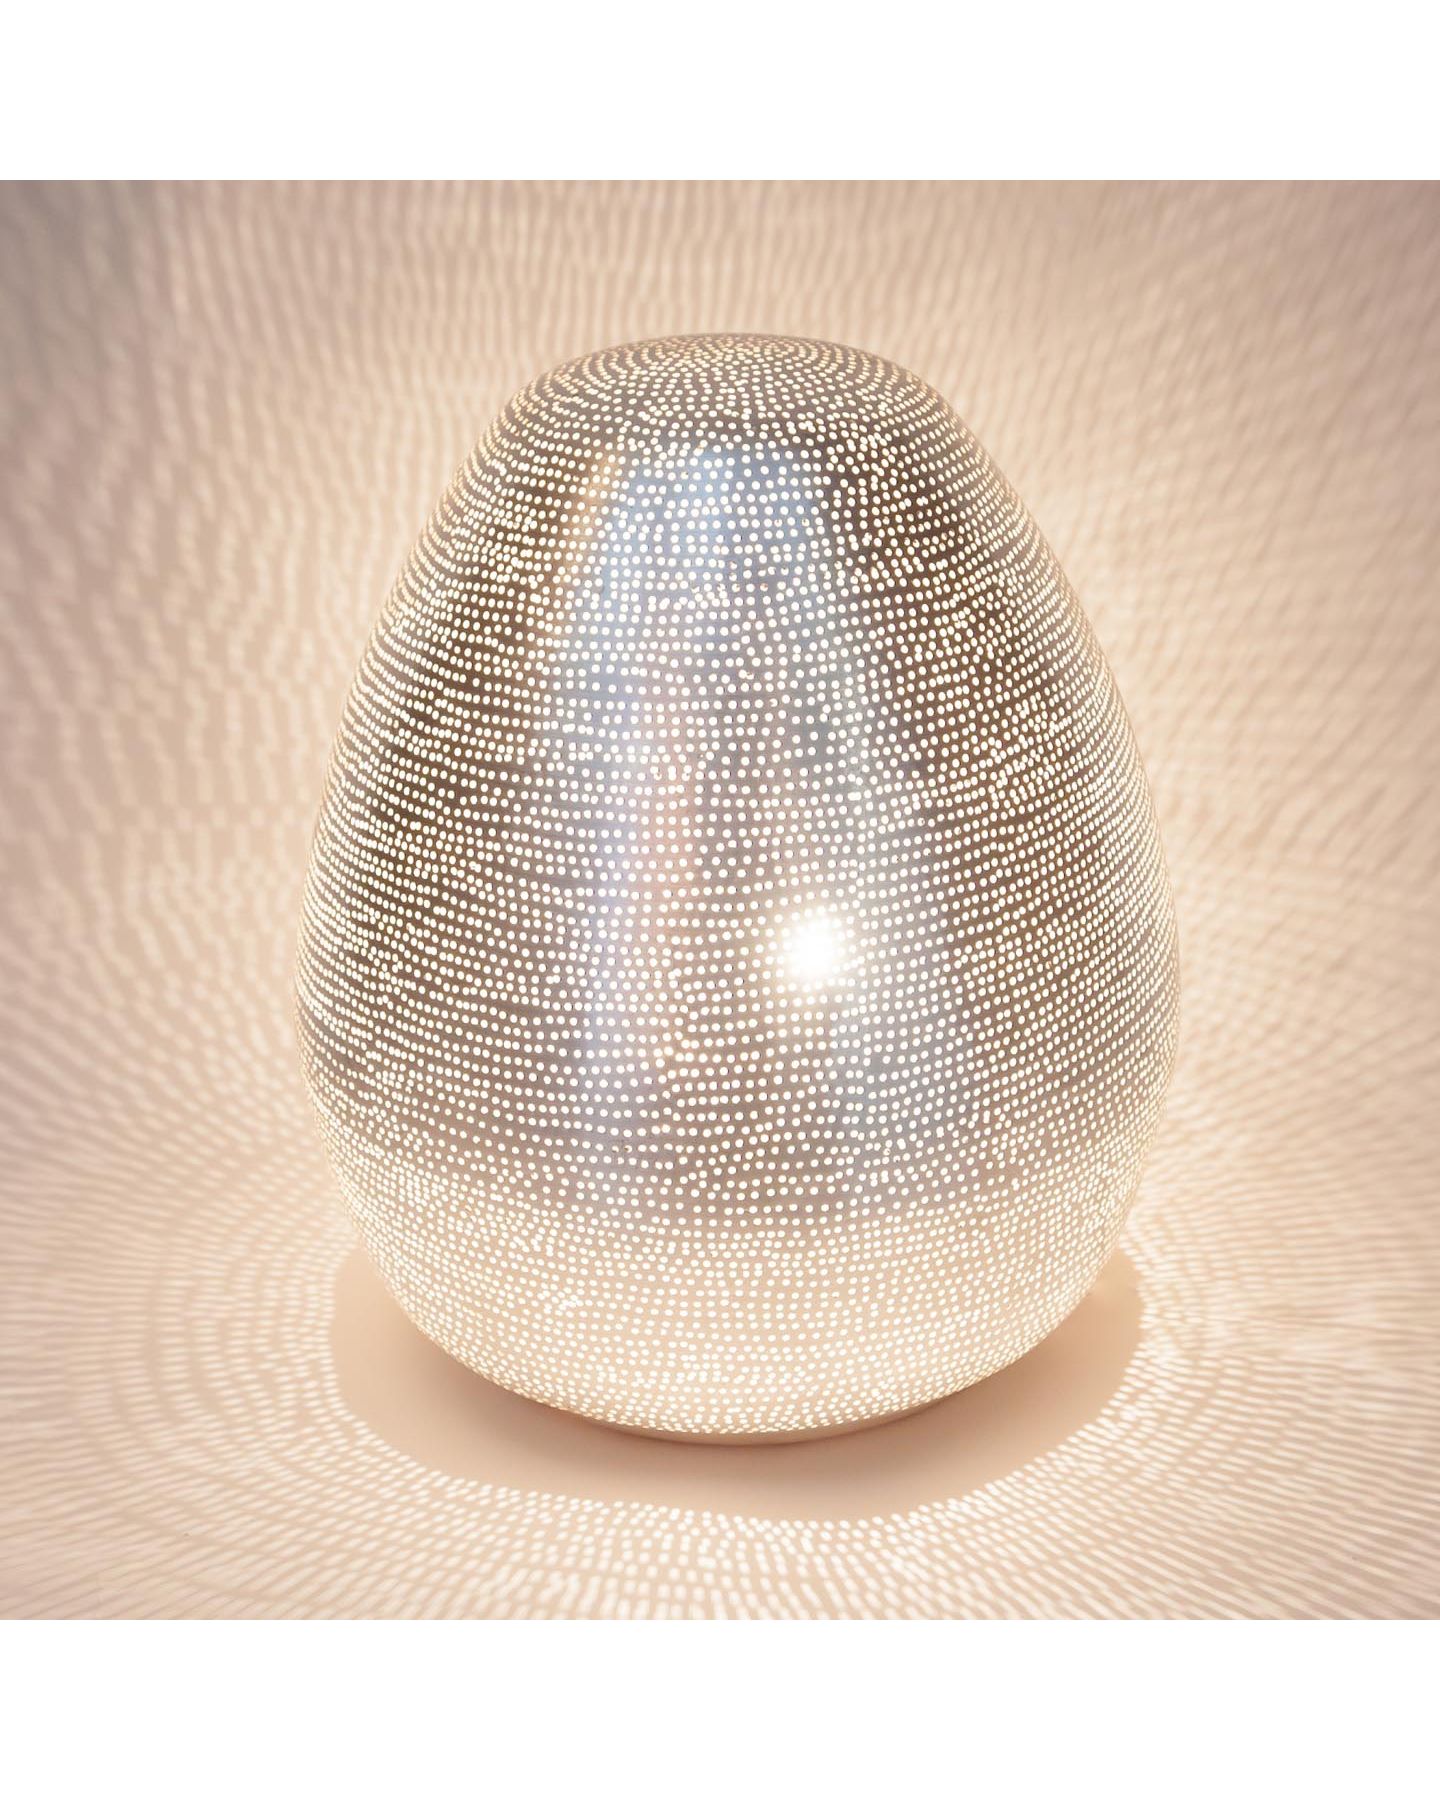 Lampe à poser KR ZEN conçue en papier non tissé et fibre de verre